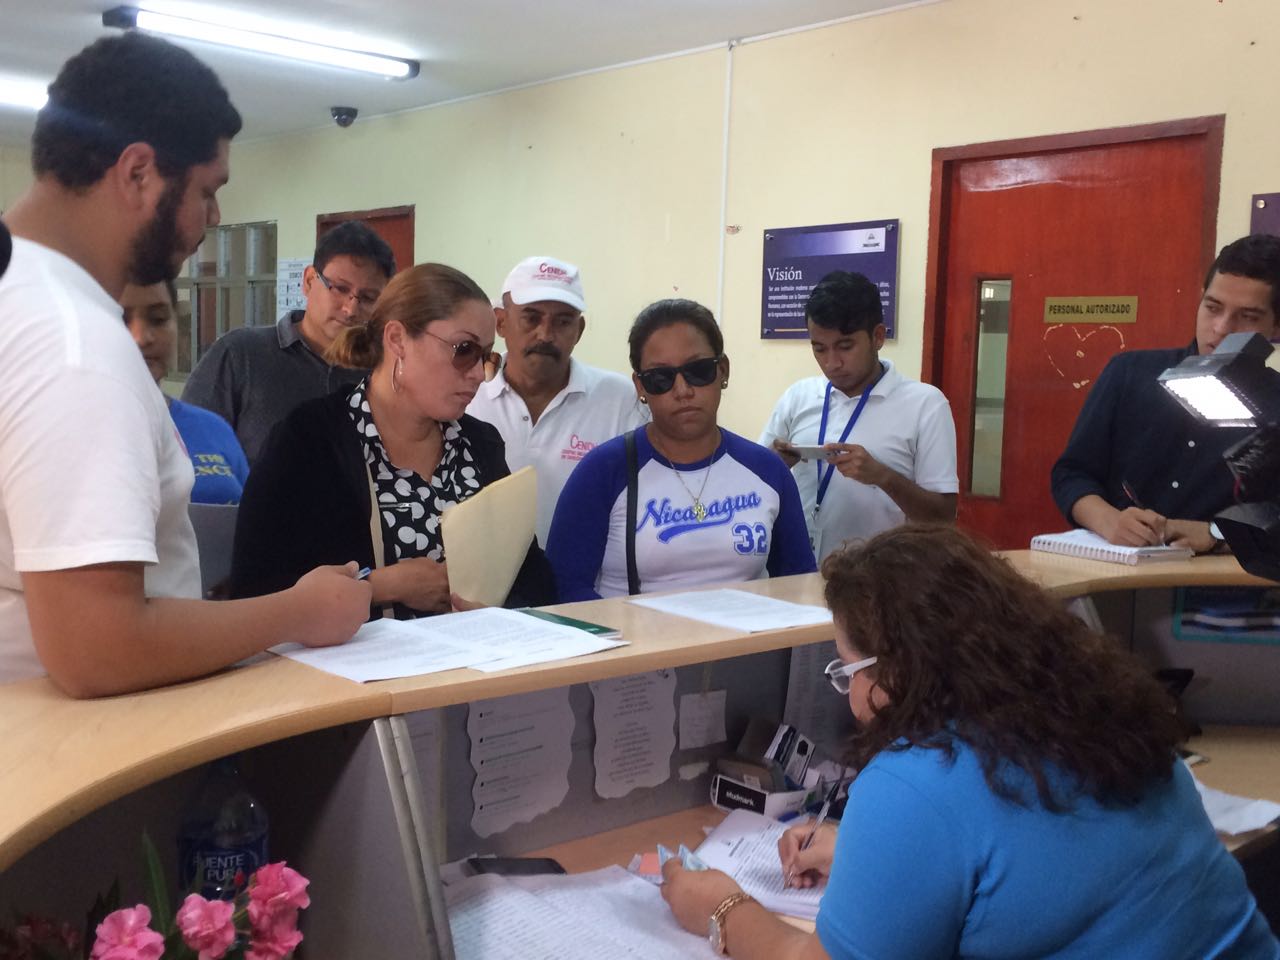 El Centro Nicaragüense de Derechos Humanos señala que hasta el momento familias de 5 de los jóvenes fallecidos han interpuesto formal denuncia ante la fiscalía. Foto: Walkiria Chavarría.